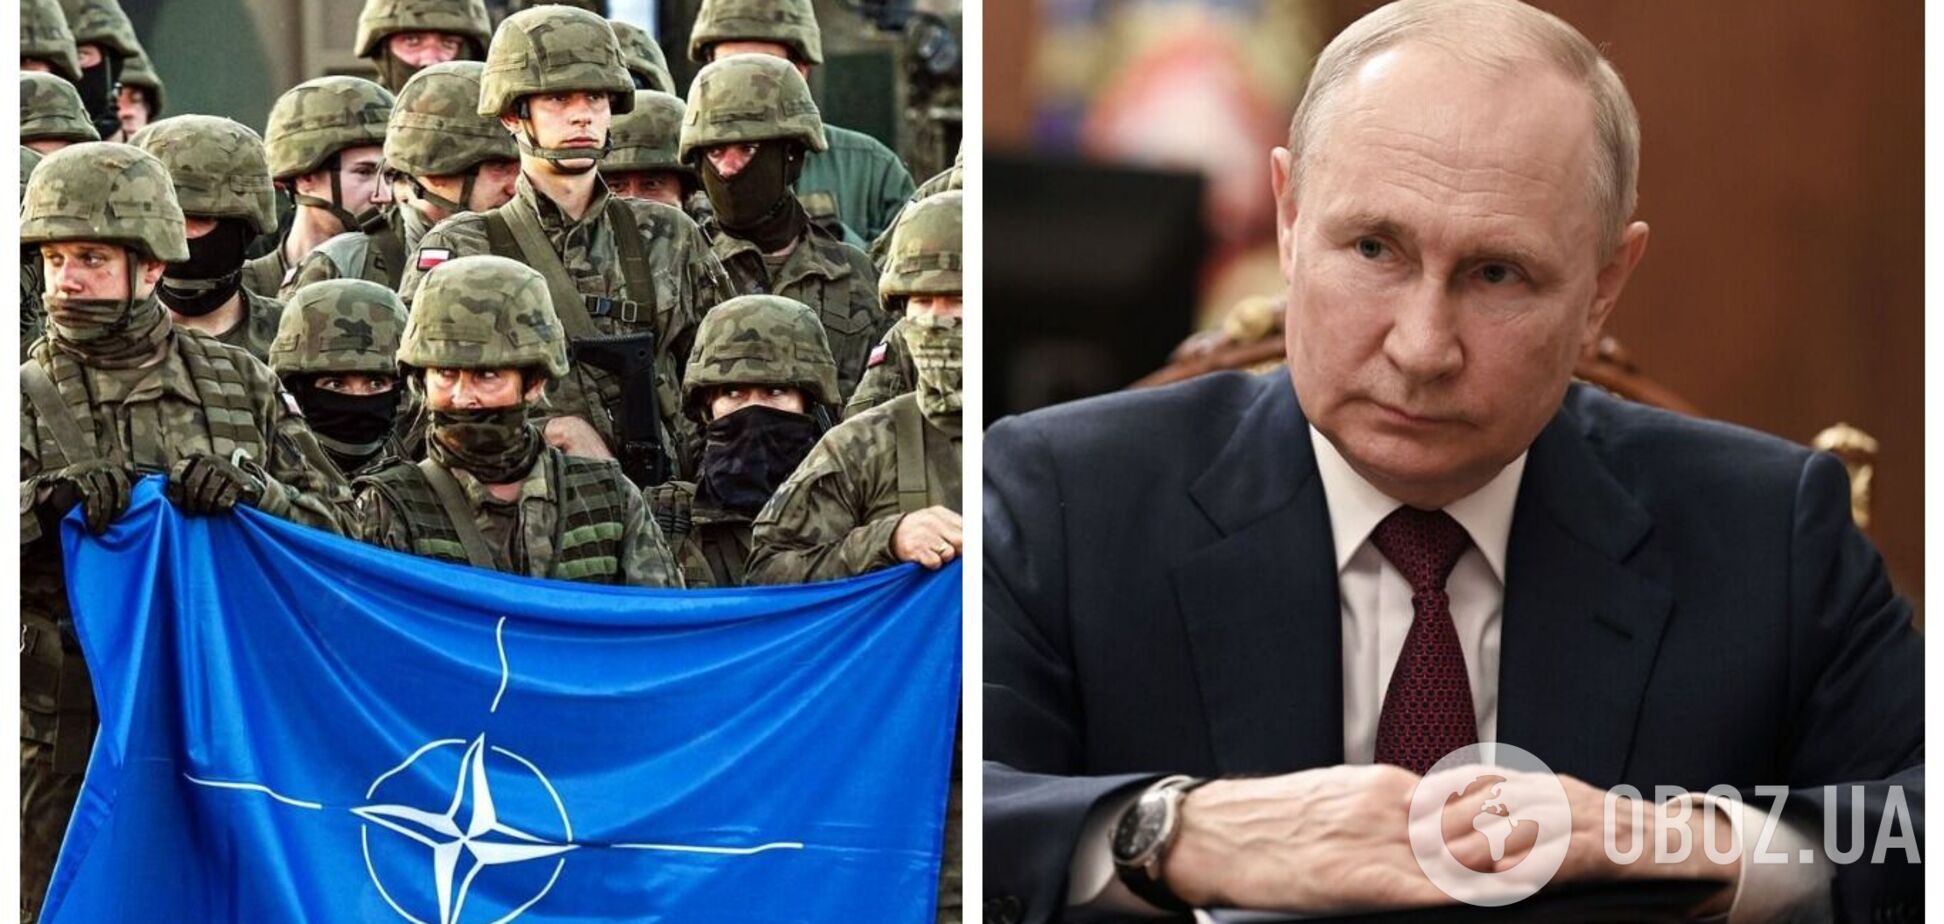 'Мы помним': Путин пригрозил 'трагическими последствиями' в случае введения Западом военных контингентов в Украину